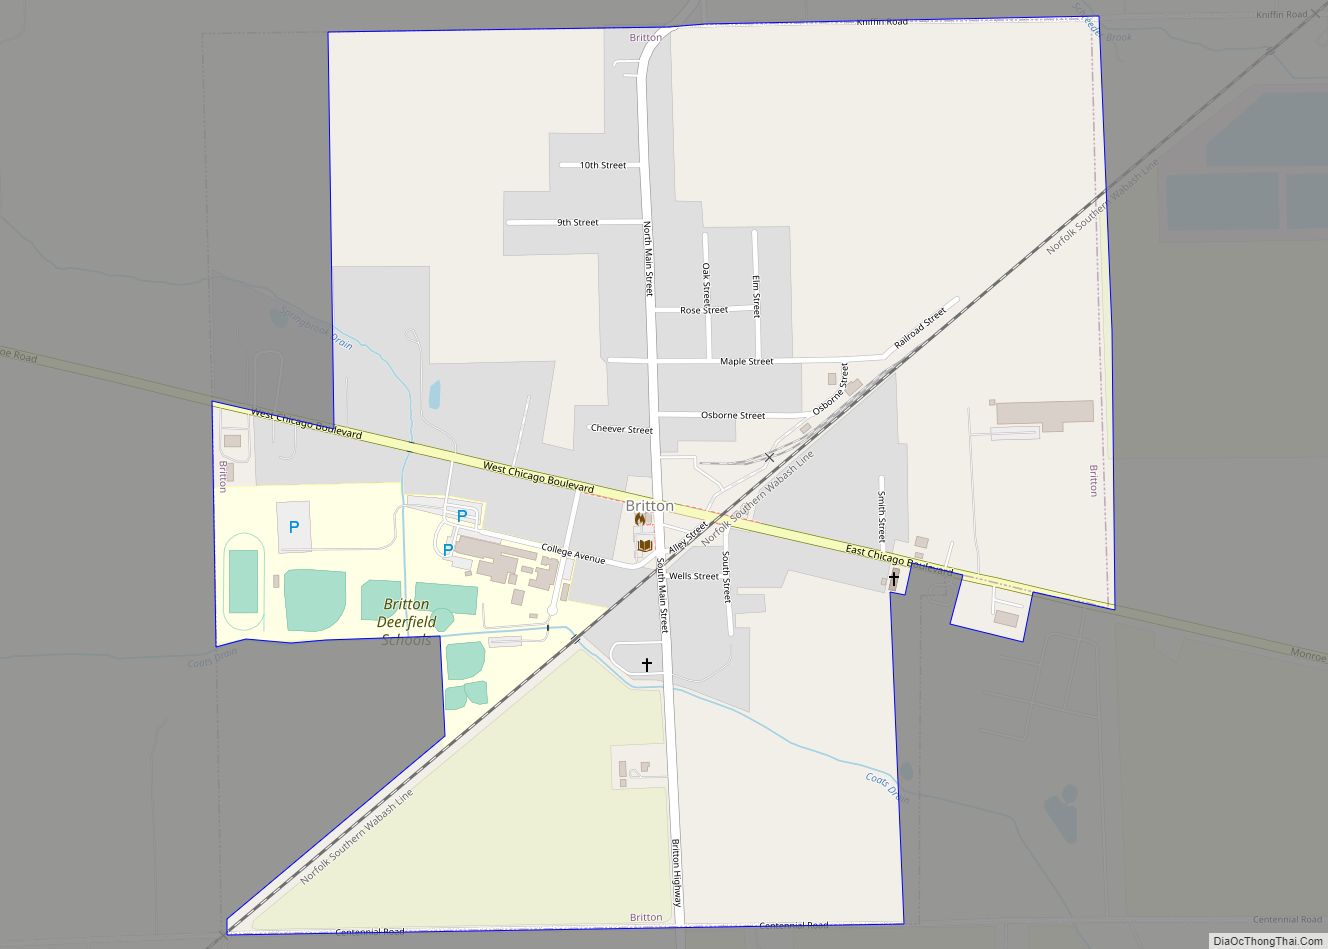 Map of Britton village